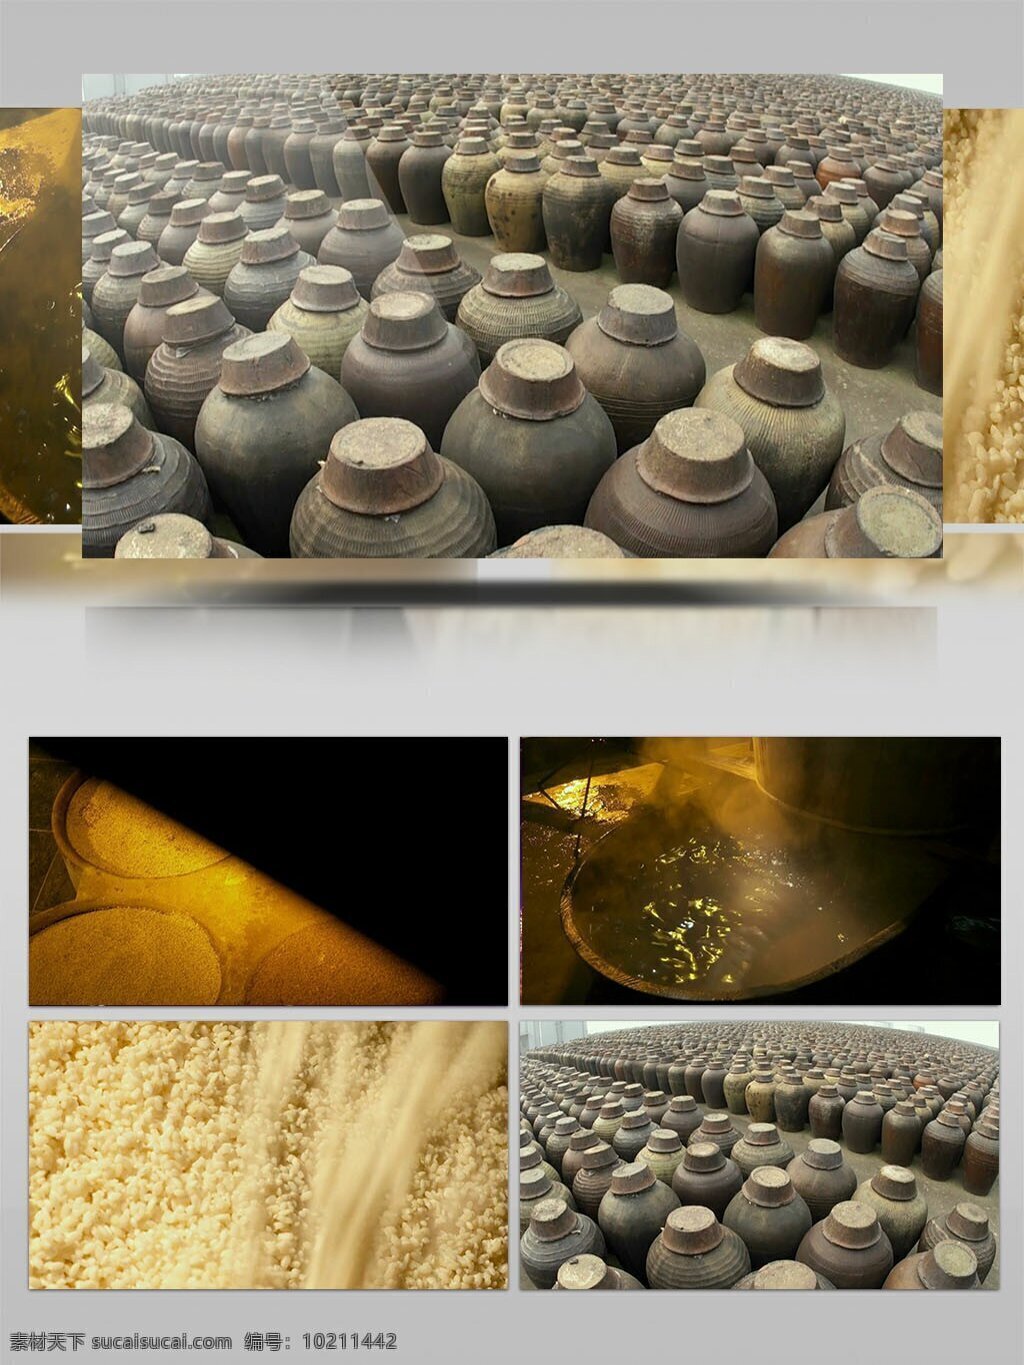 中国 传统 酒 制作 视频 实拍 古老 方法 米酒 秘制酒 酒罐